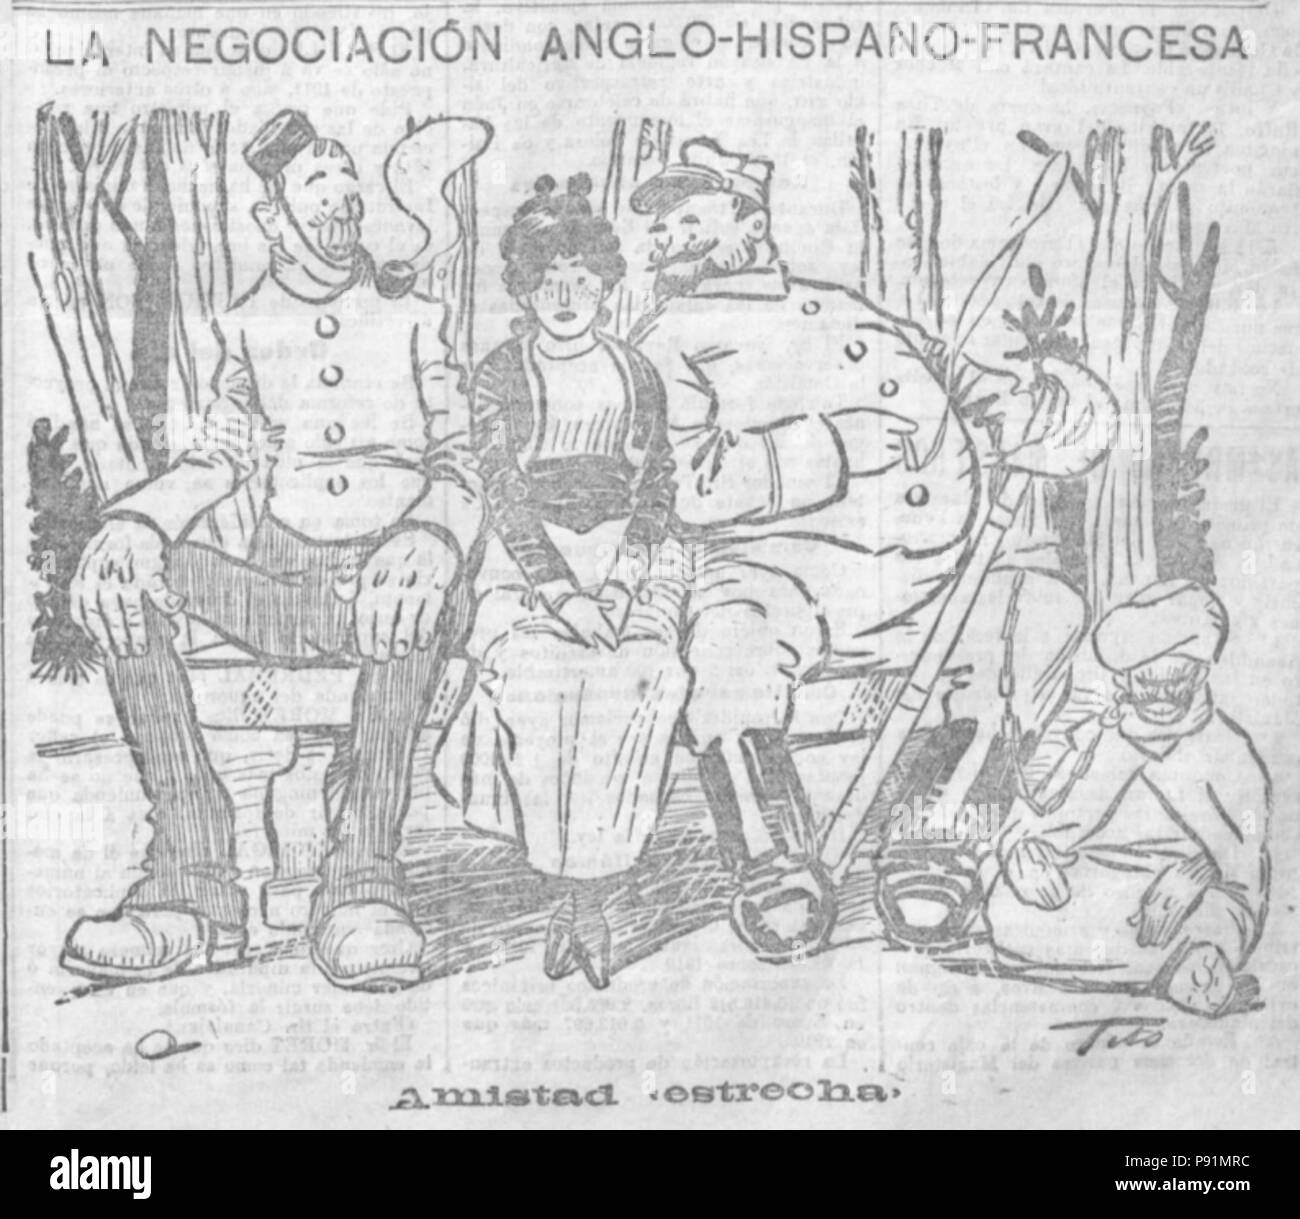 383 La negociación anglo-hispano-francesa, de Tito, El Liberal, 5 de febrero de 1912 Stock Photo